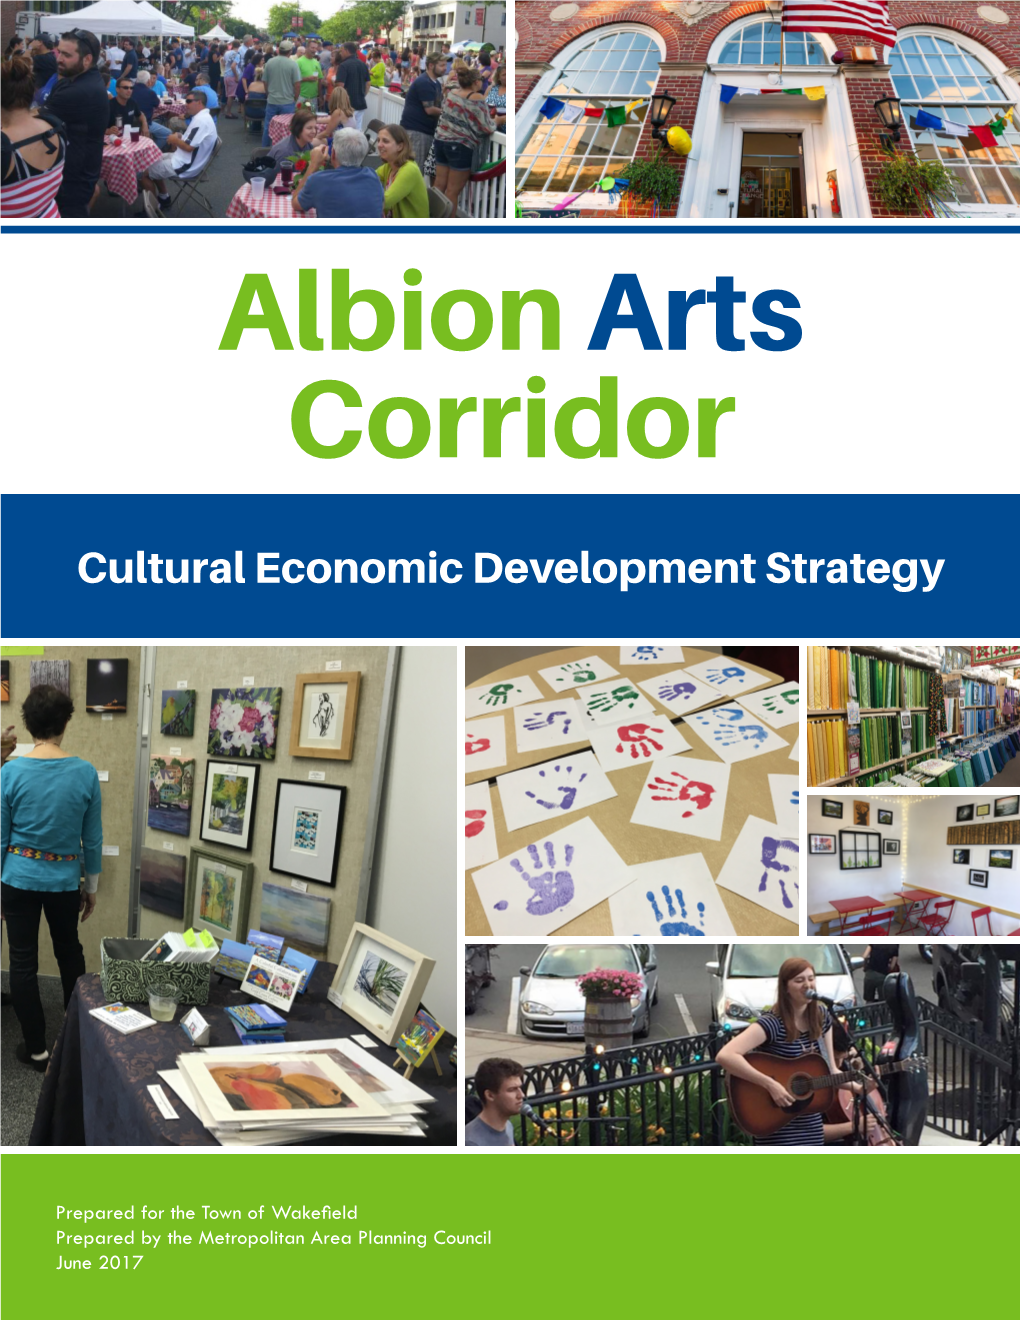 Albion Arts Corridor, Cultural Economic Development Strategy